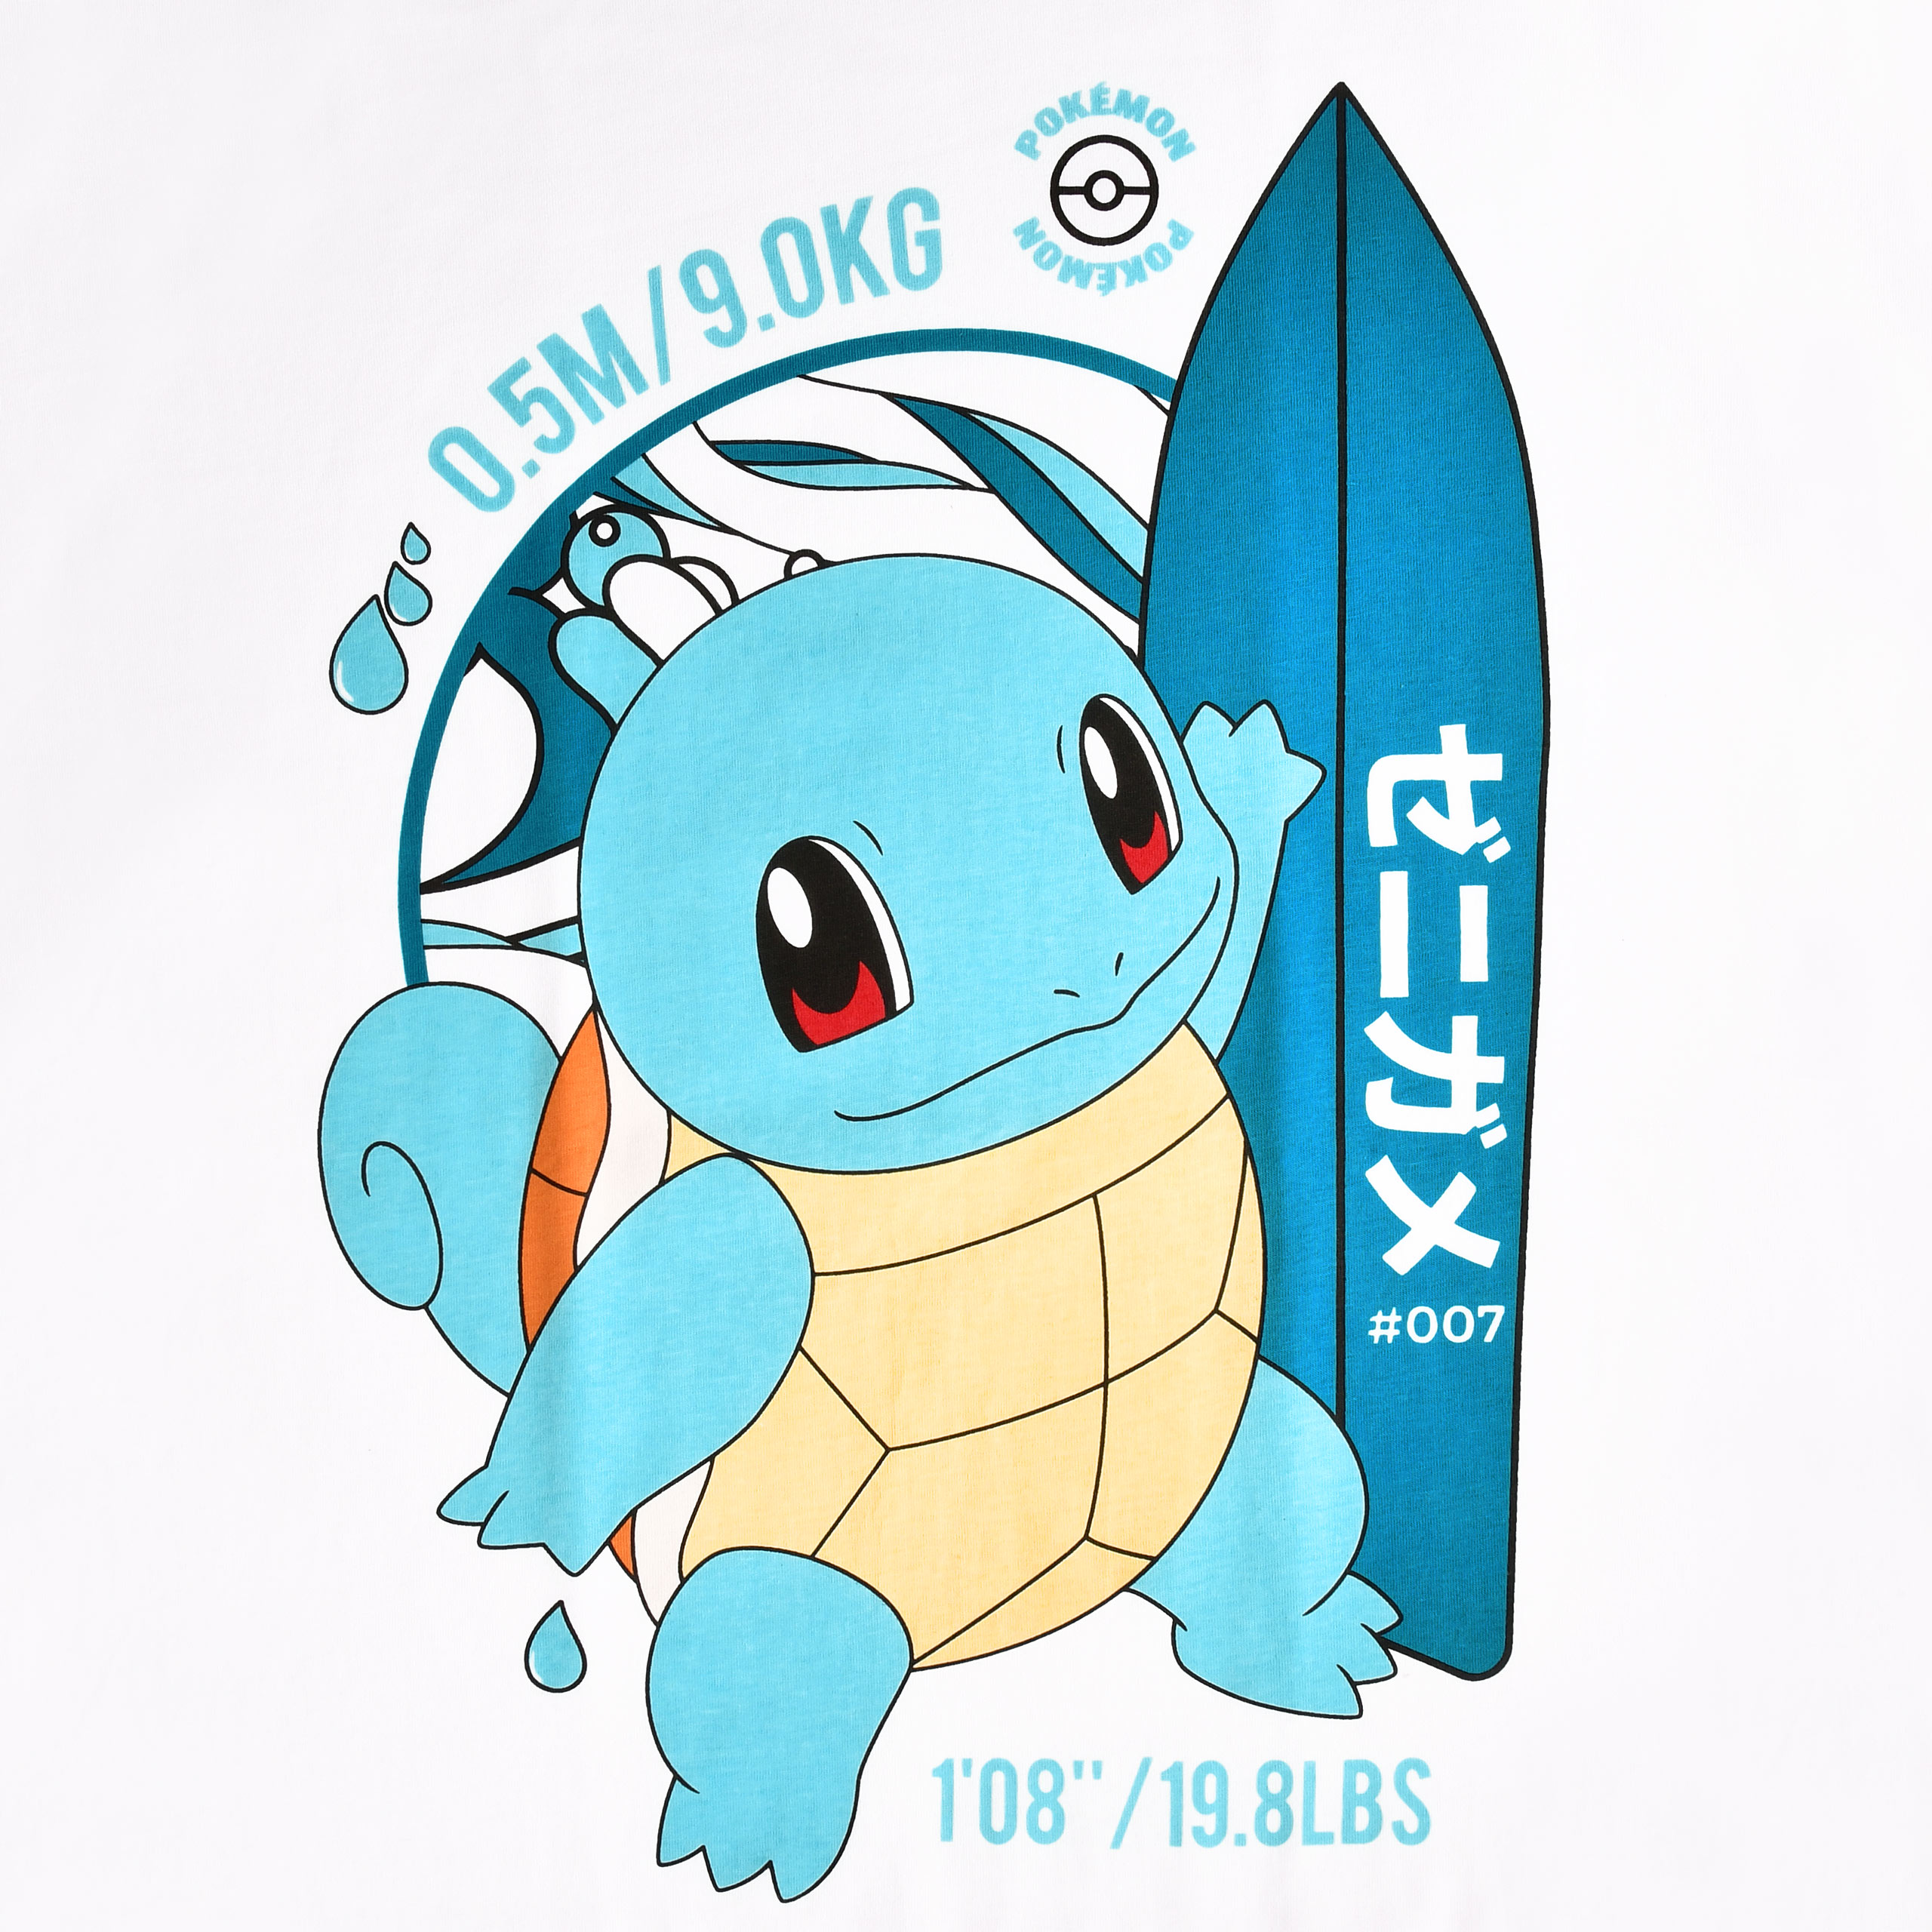 Pokemon - Schiggy Surfer T-Shirt weiß